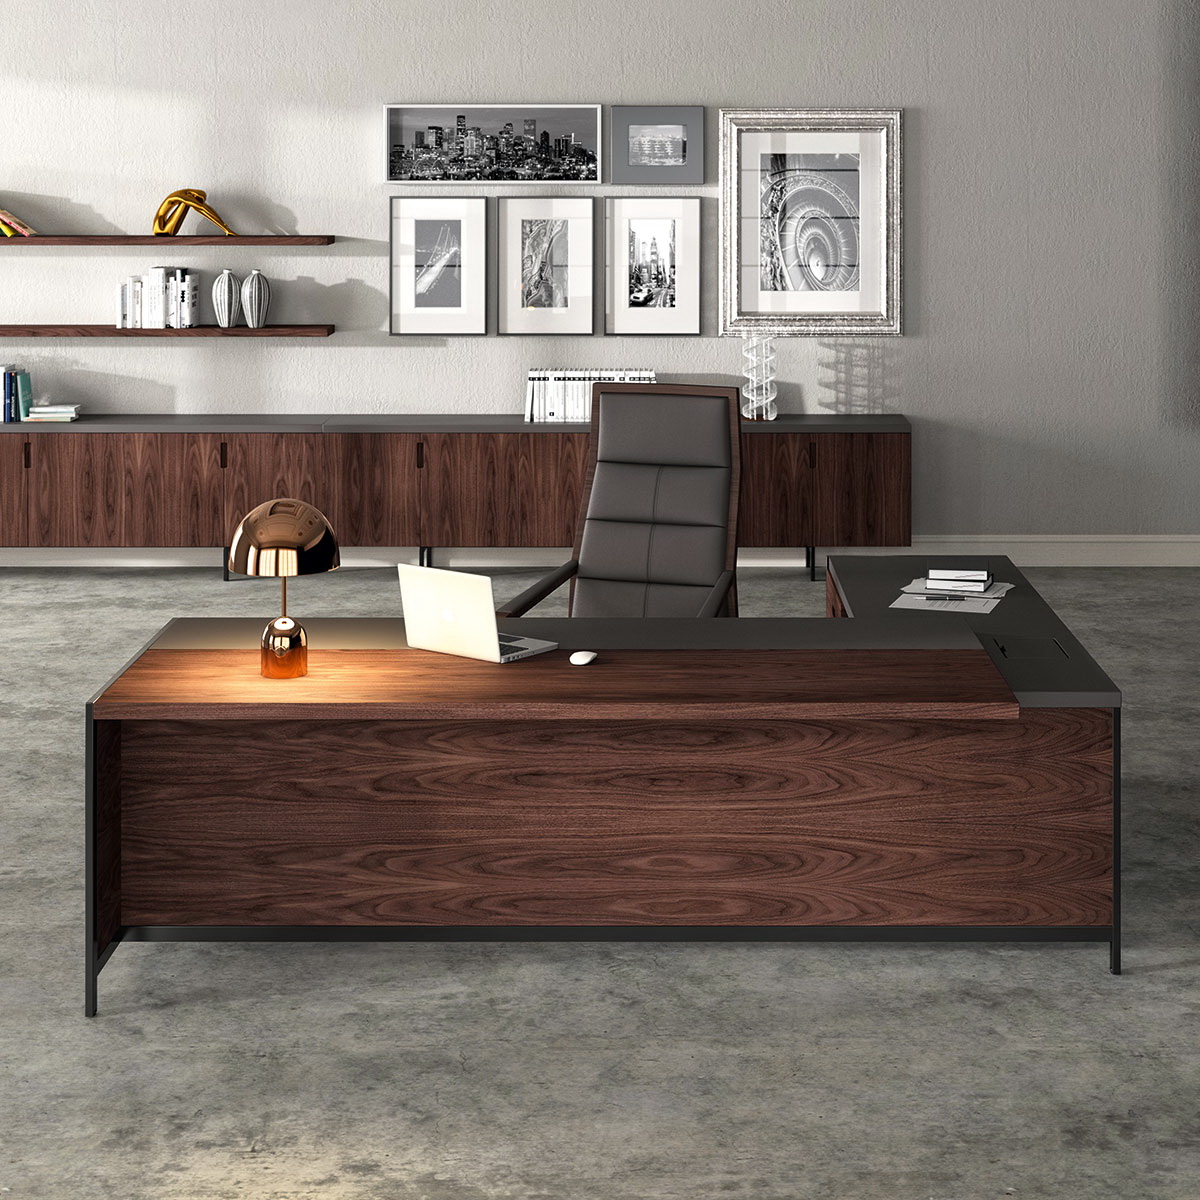 Mueble despacho mesa Gallery-nogal-espresso-technoblack-piel-antracita-PI08-08 by Ofifran en muebles antoñán® León